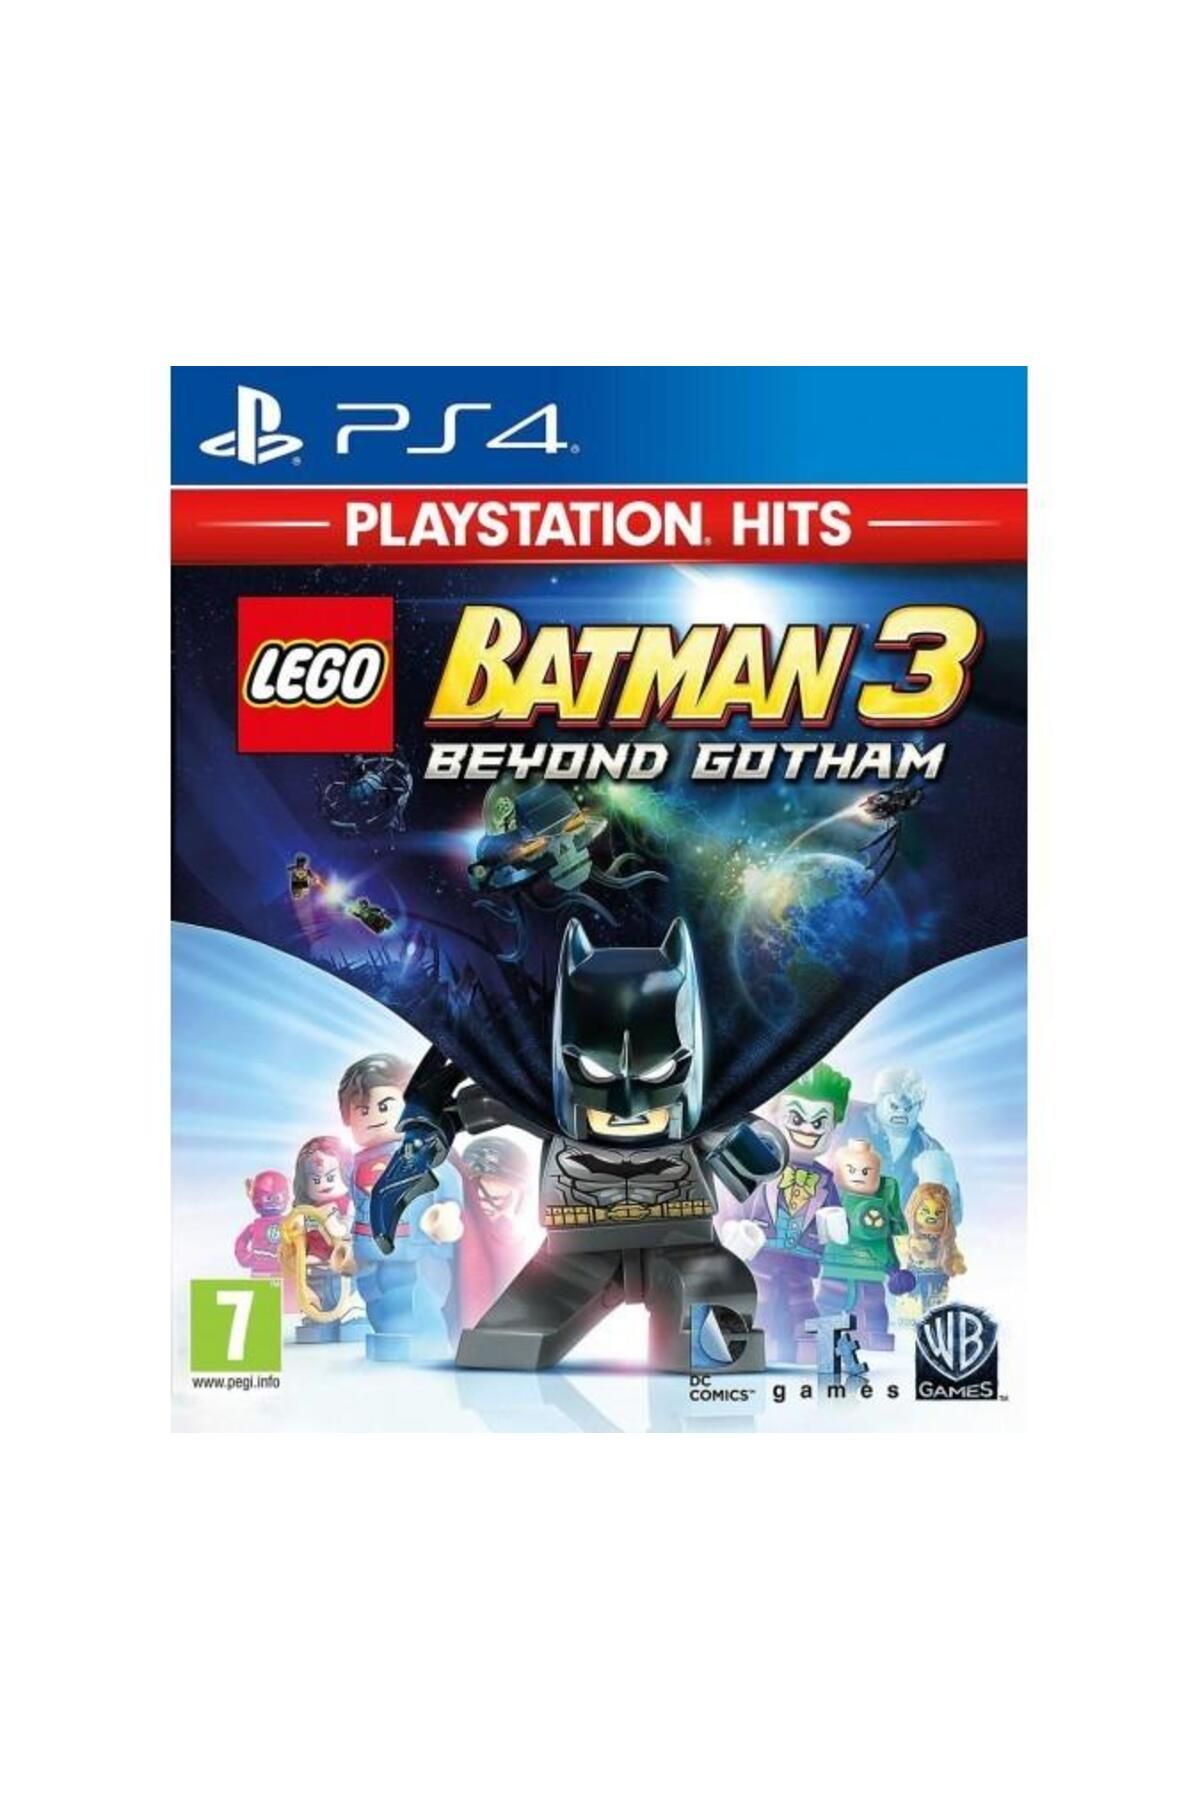 Wb Games PS4 LEGO BATMAN 3 HITS